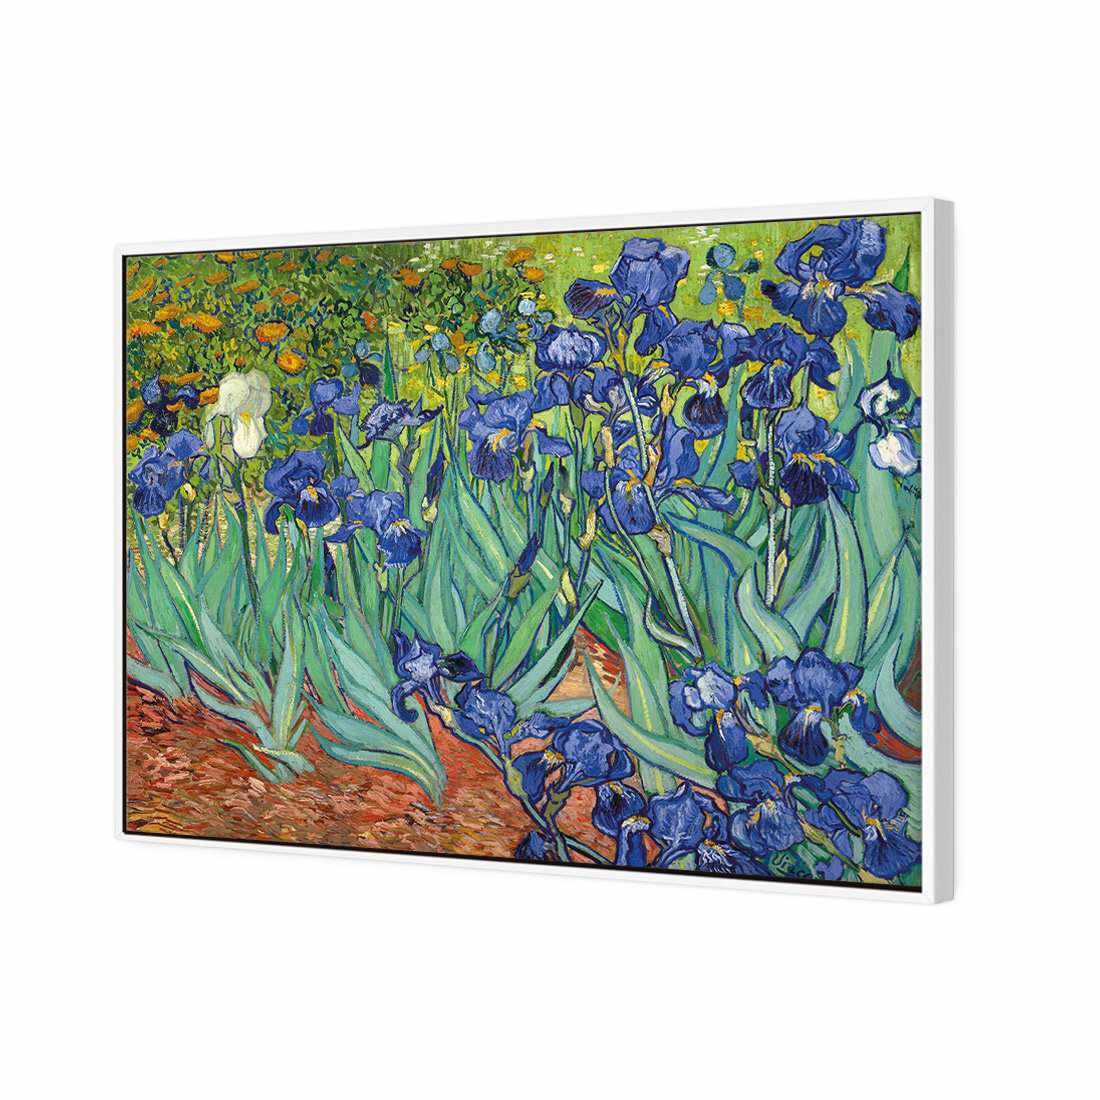 Irises 2 - Van Gogh Canvas Art-Canvas-Wall Art Designs-45x30cm-Canvas - White Frame-Wall Art Designs